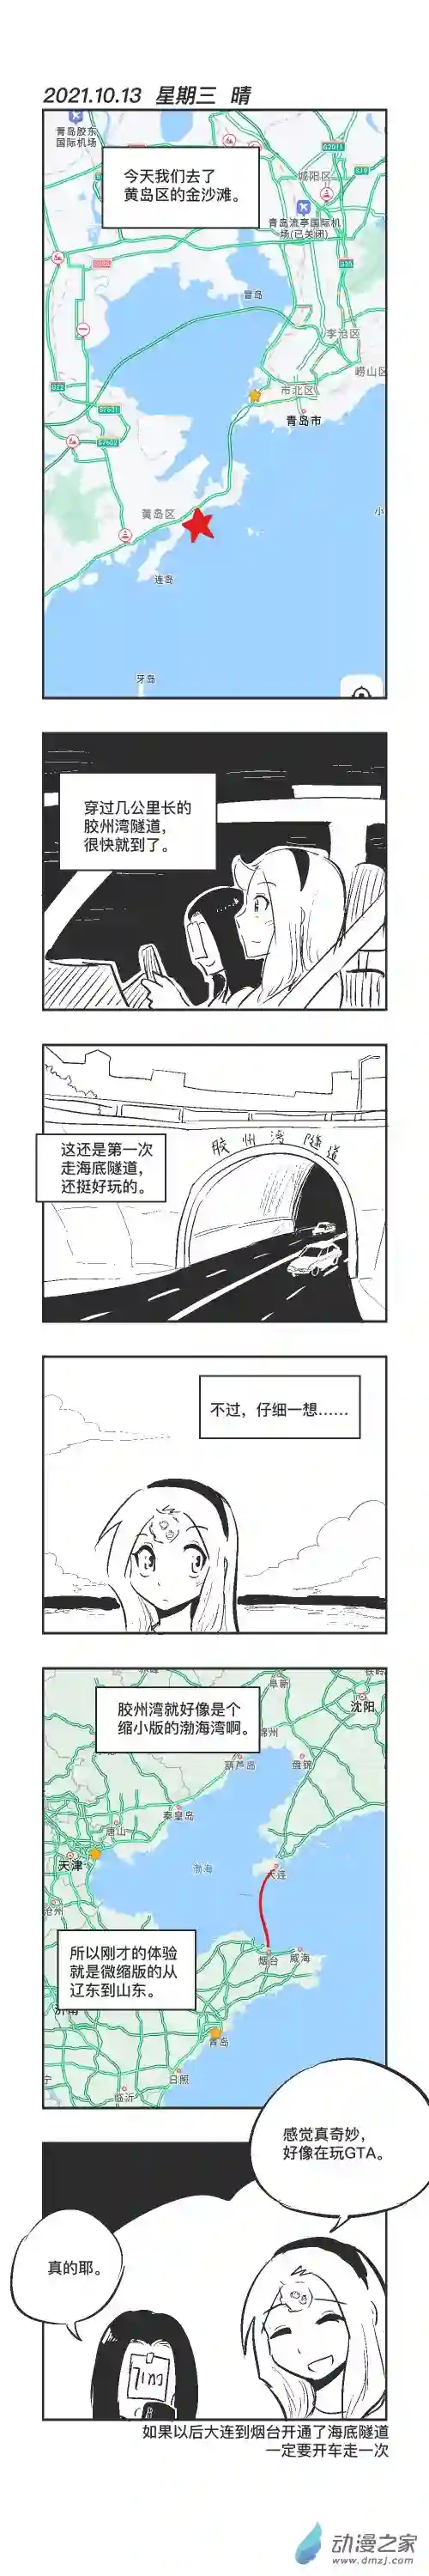 乌贼ichabod日更计划0113 海底隧道